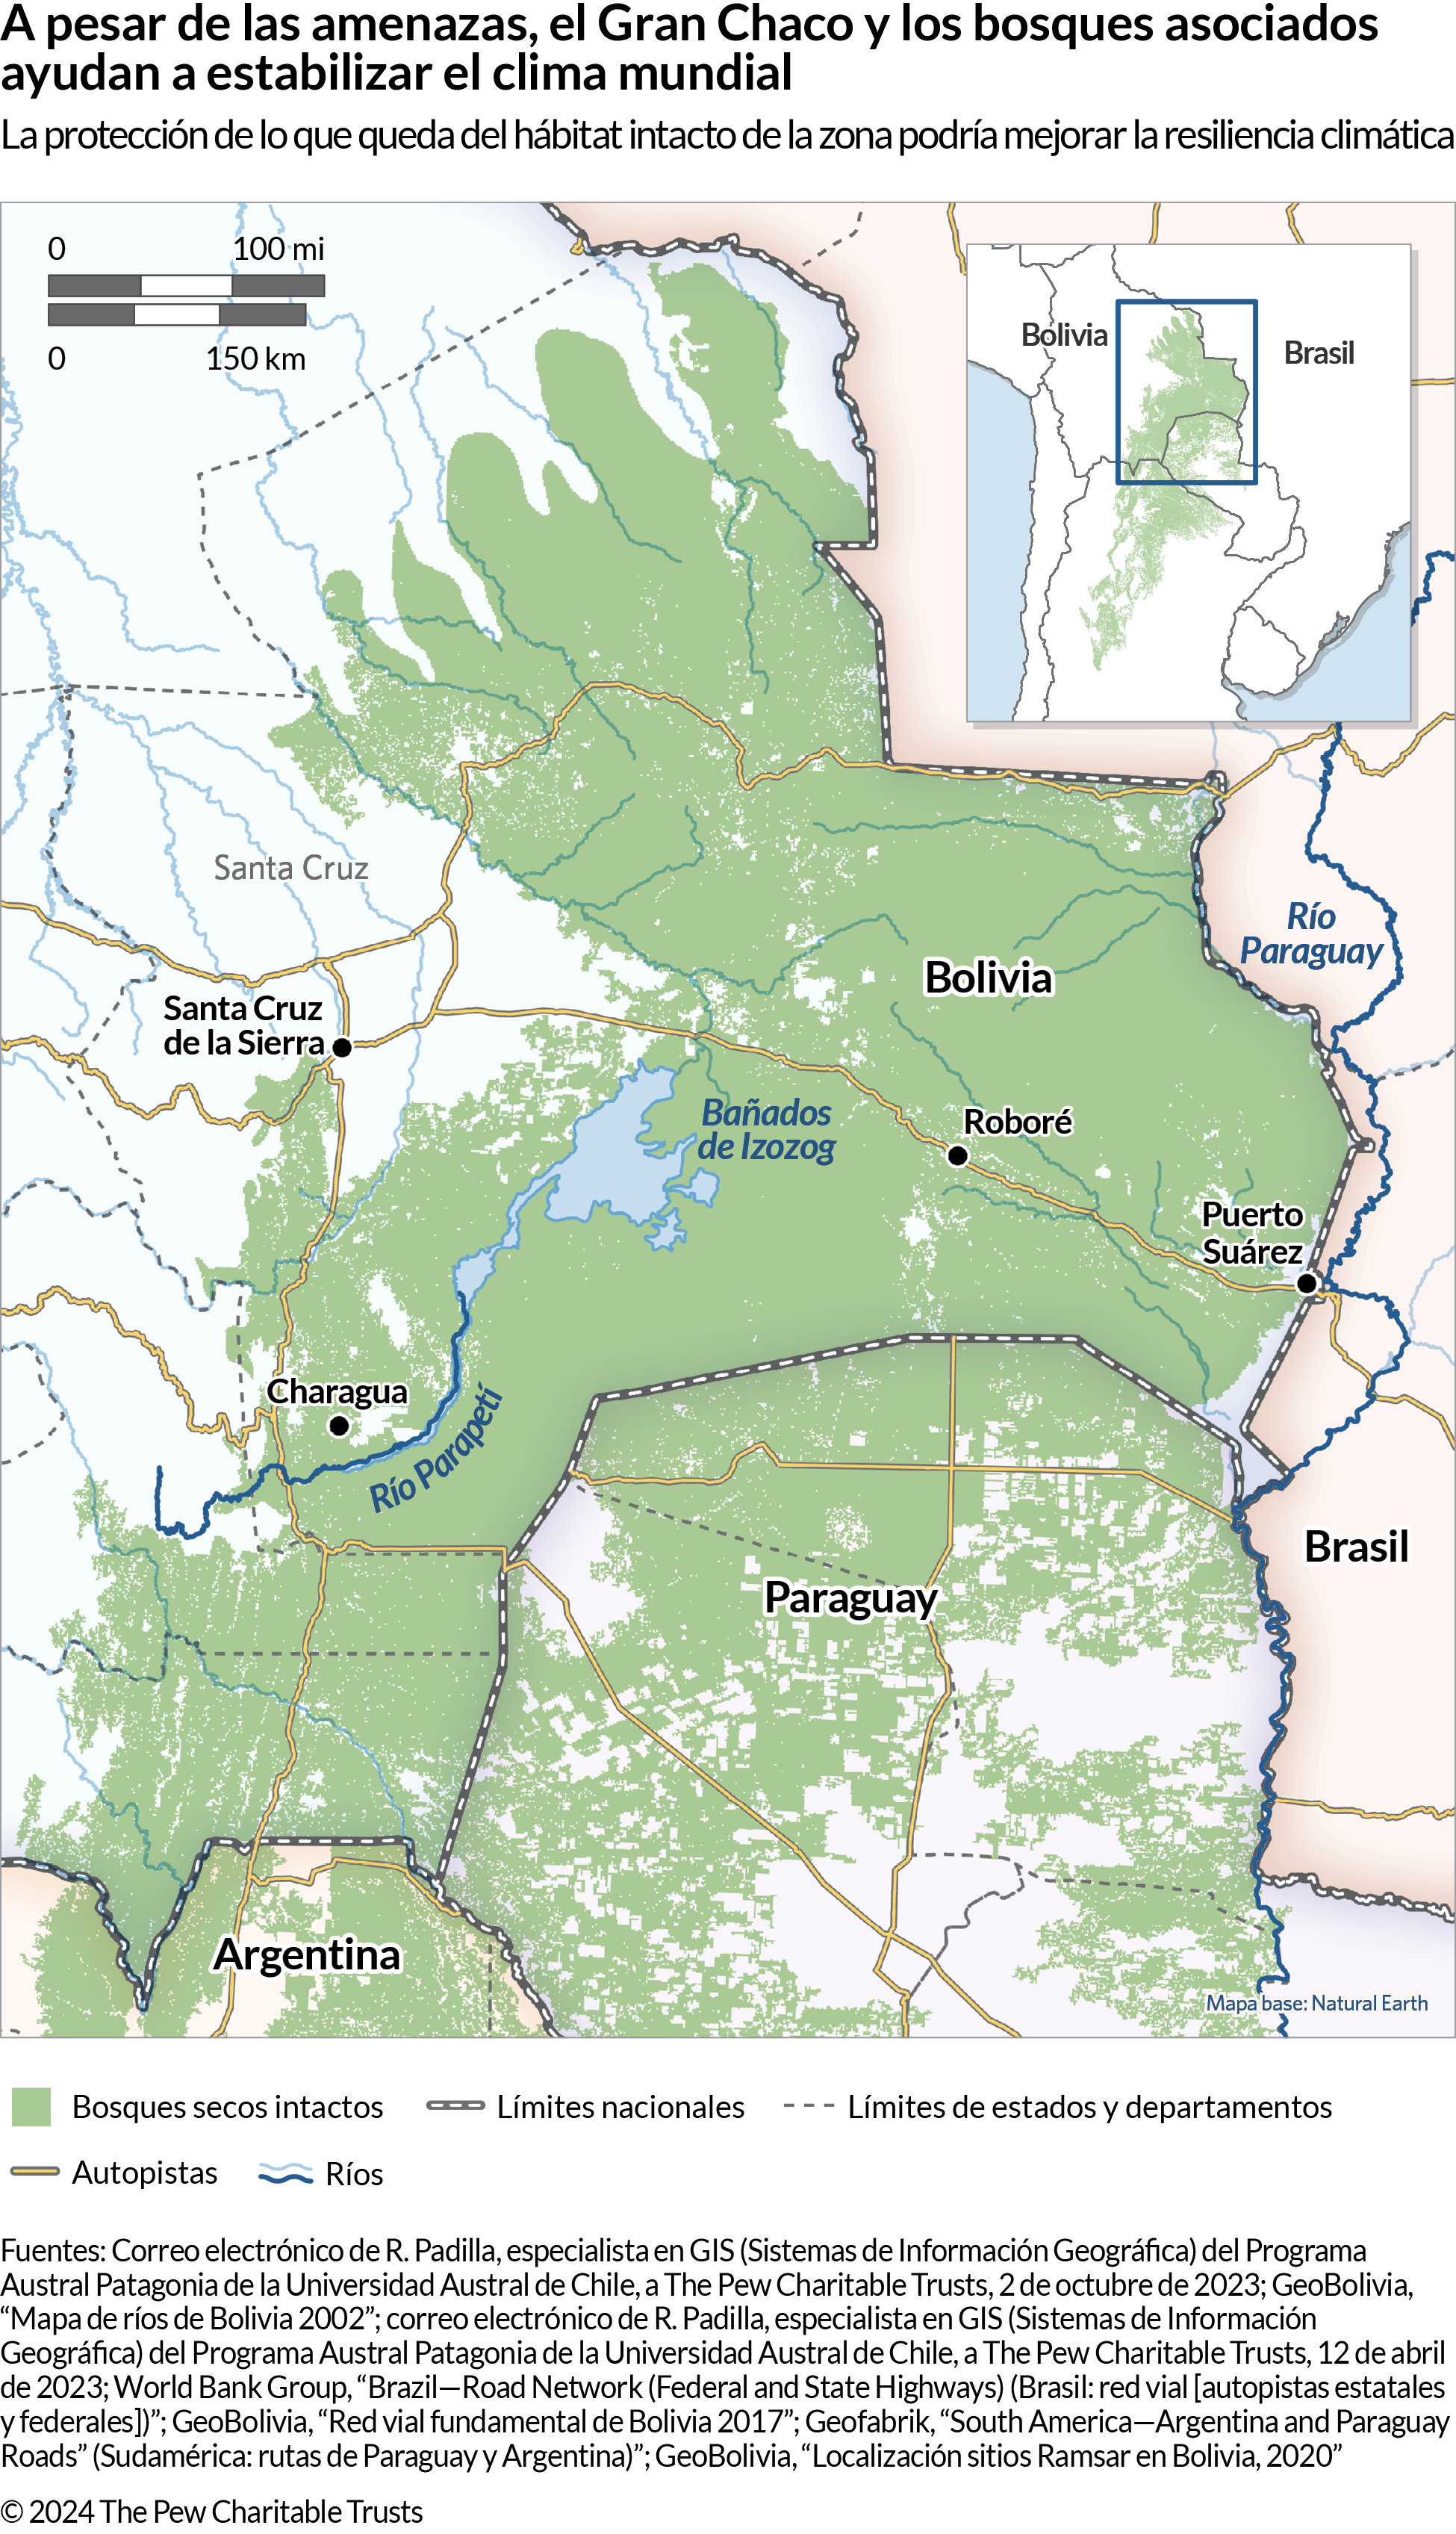 Un mapa que muestra una parte de Sudamérica donde convergen las fronteras de Bolivia, Brasil, Paraguay y Argentina e incluye una gran zona sombreada en verde. El mapa también indica la ubicación de algunos ríos, autopistas, ciudades, estados y departamentos.